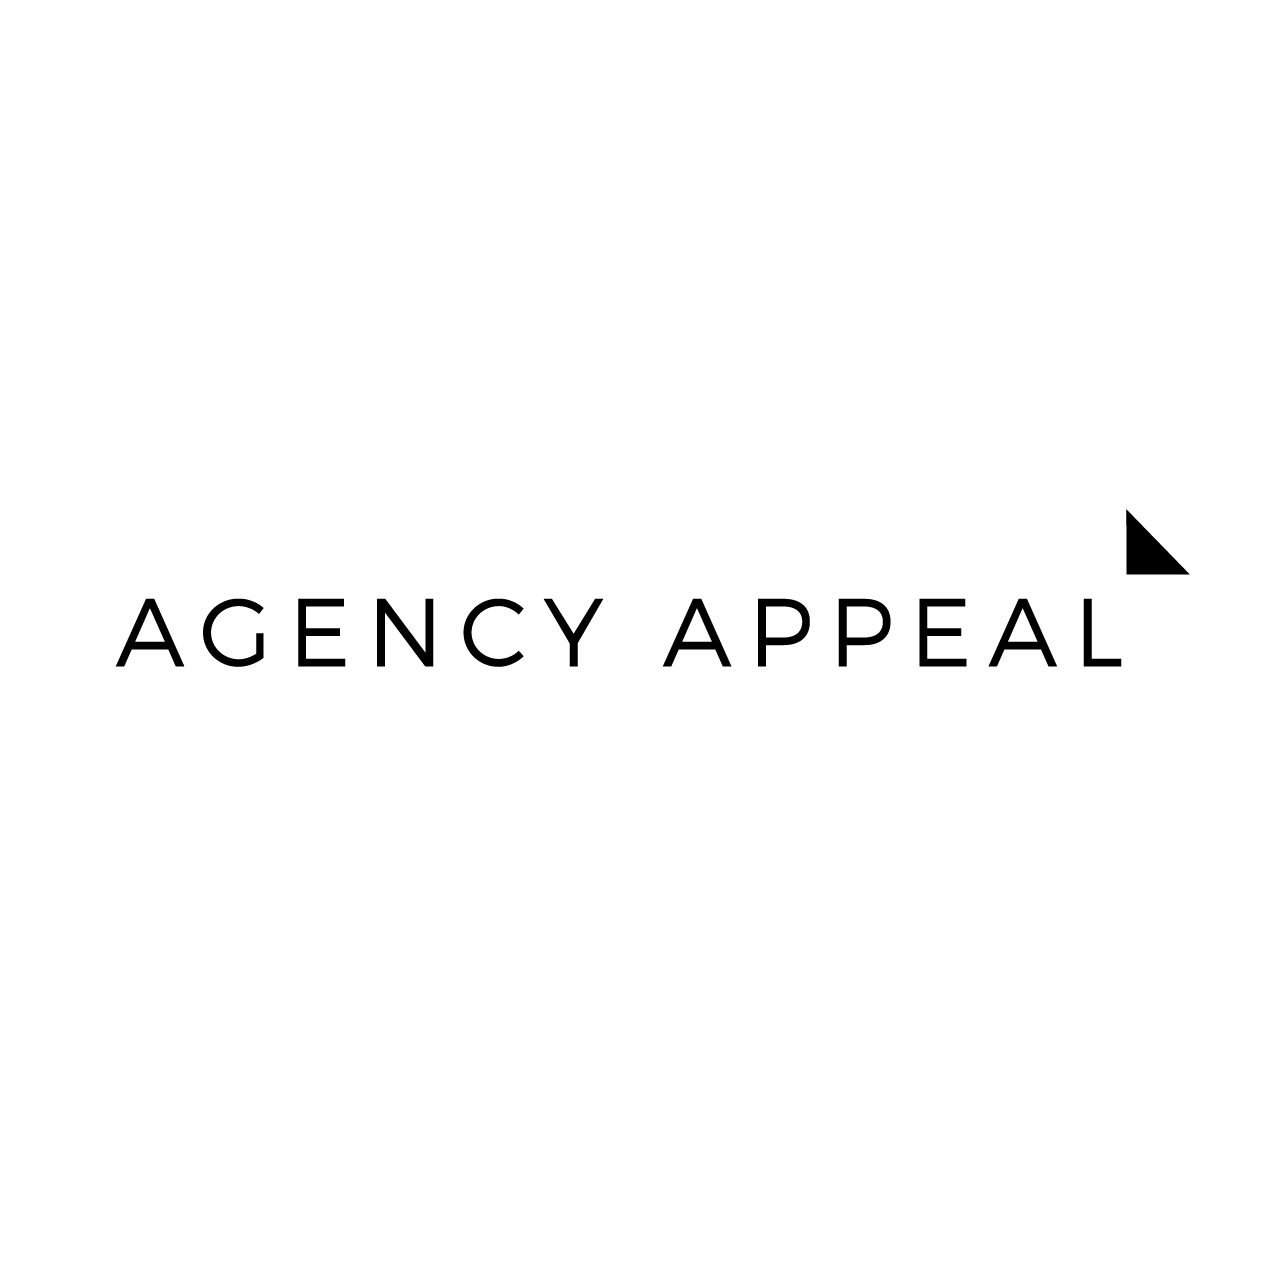 'Agency Appeal